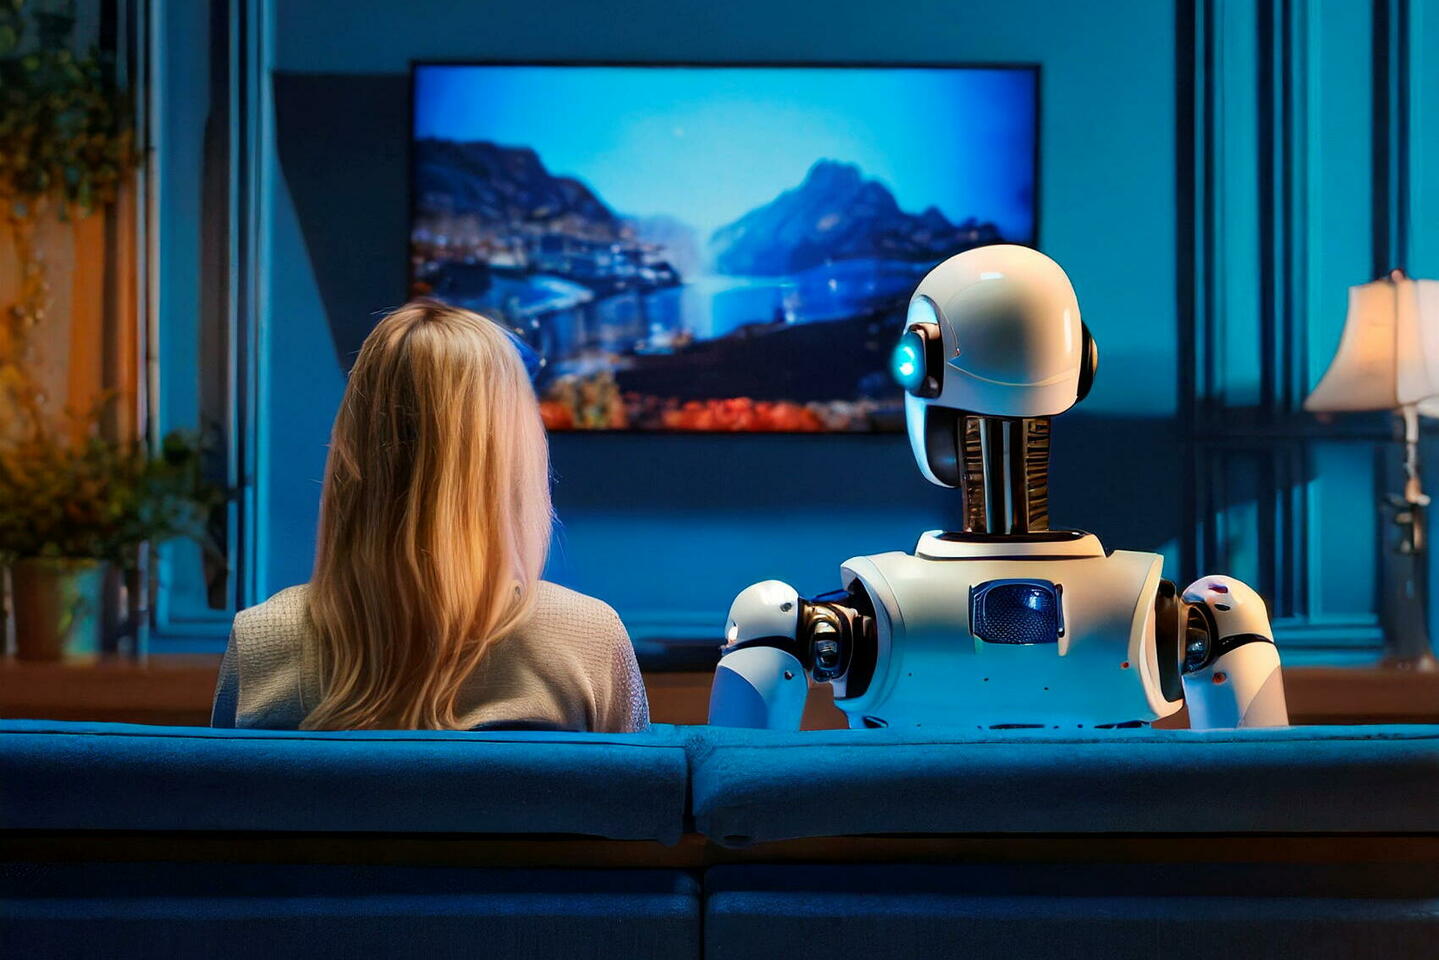 Voici à quoi pourrait ressembler l’intelligence artificielle du futur